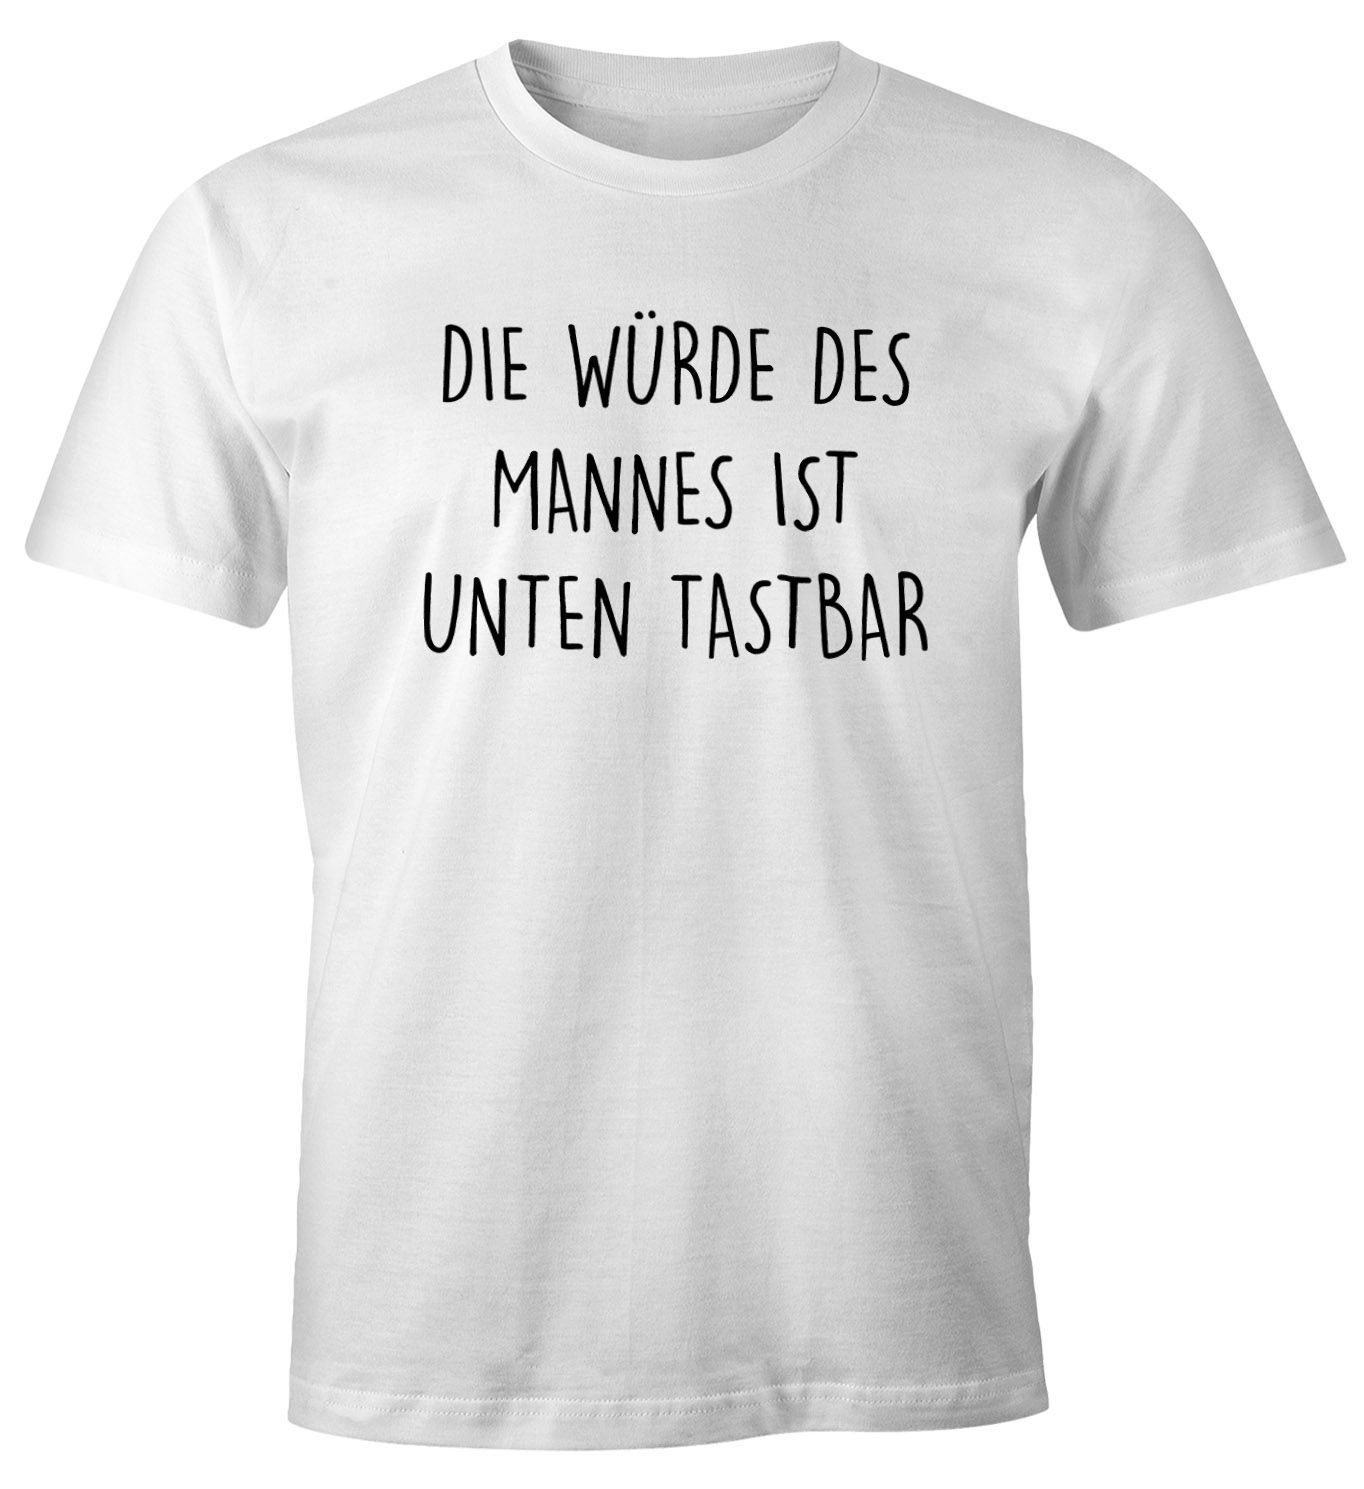 MoonWorks Print-Shirt Lustiges Herren T-Shirt mit Spruch Die Würde des Mannes ist unten tastbar Fun-Shirt Moonworks® mit Print